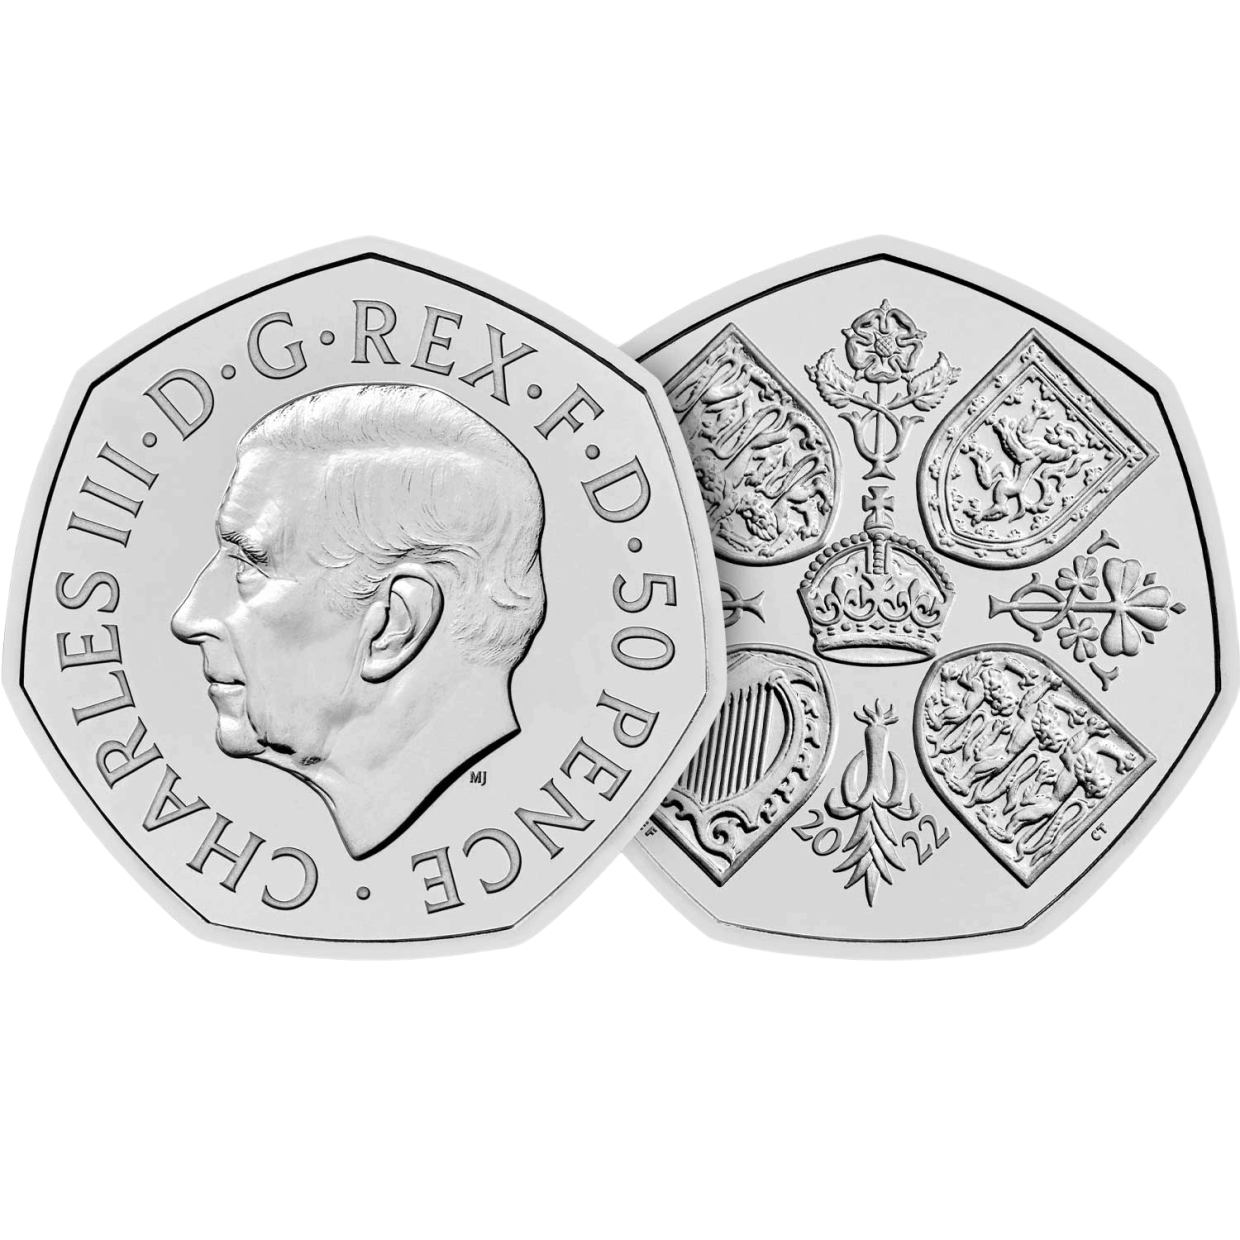 Diese Münze wurde zum Gedenken an das Leben der Königin herausgegeben